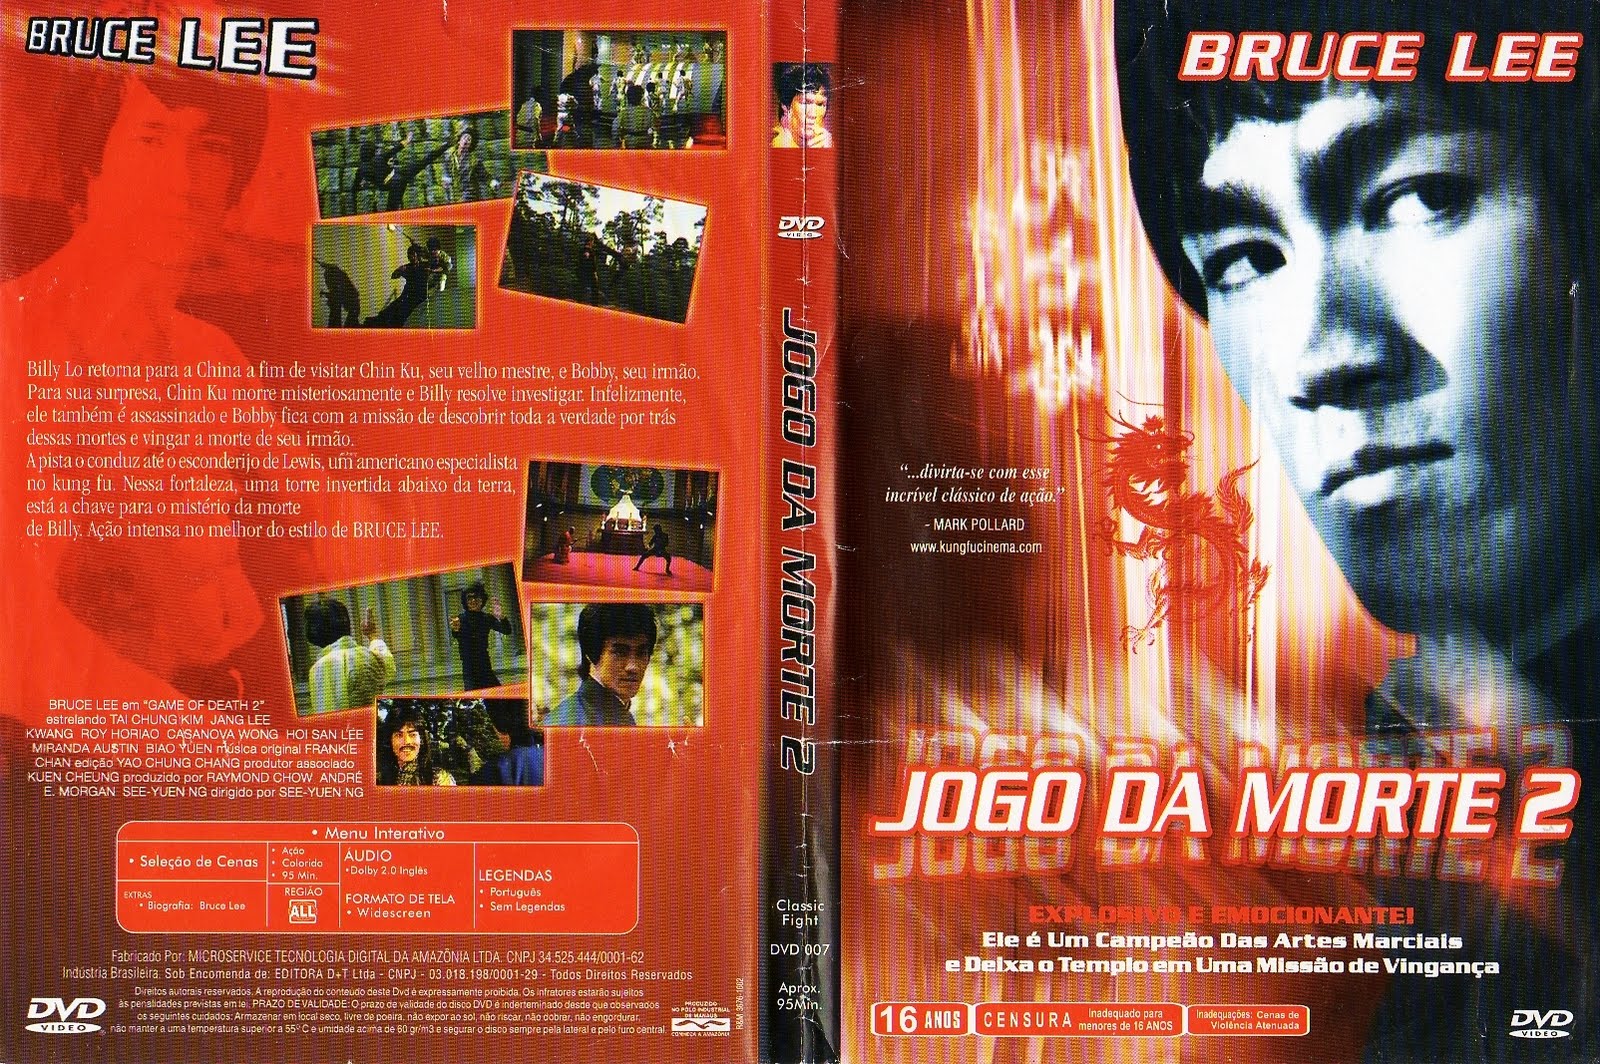 Capas para DVD dos dois jogos